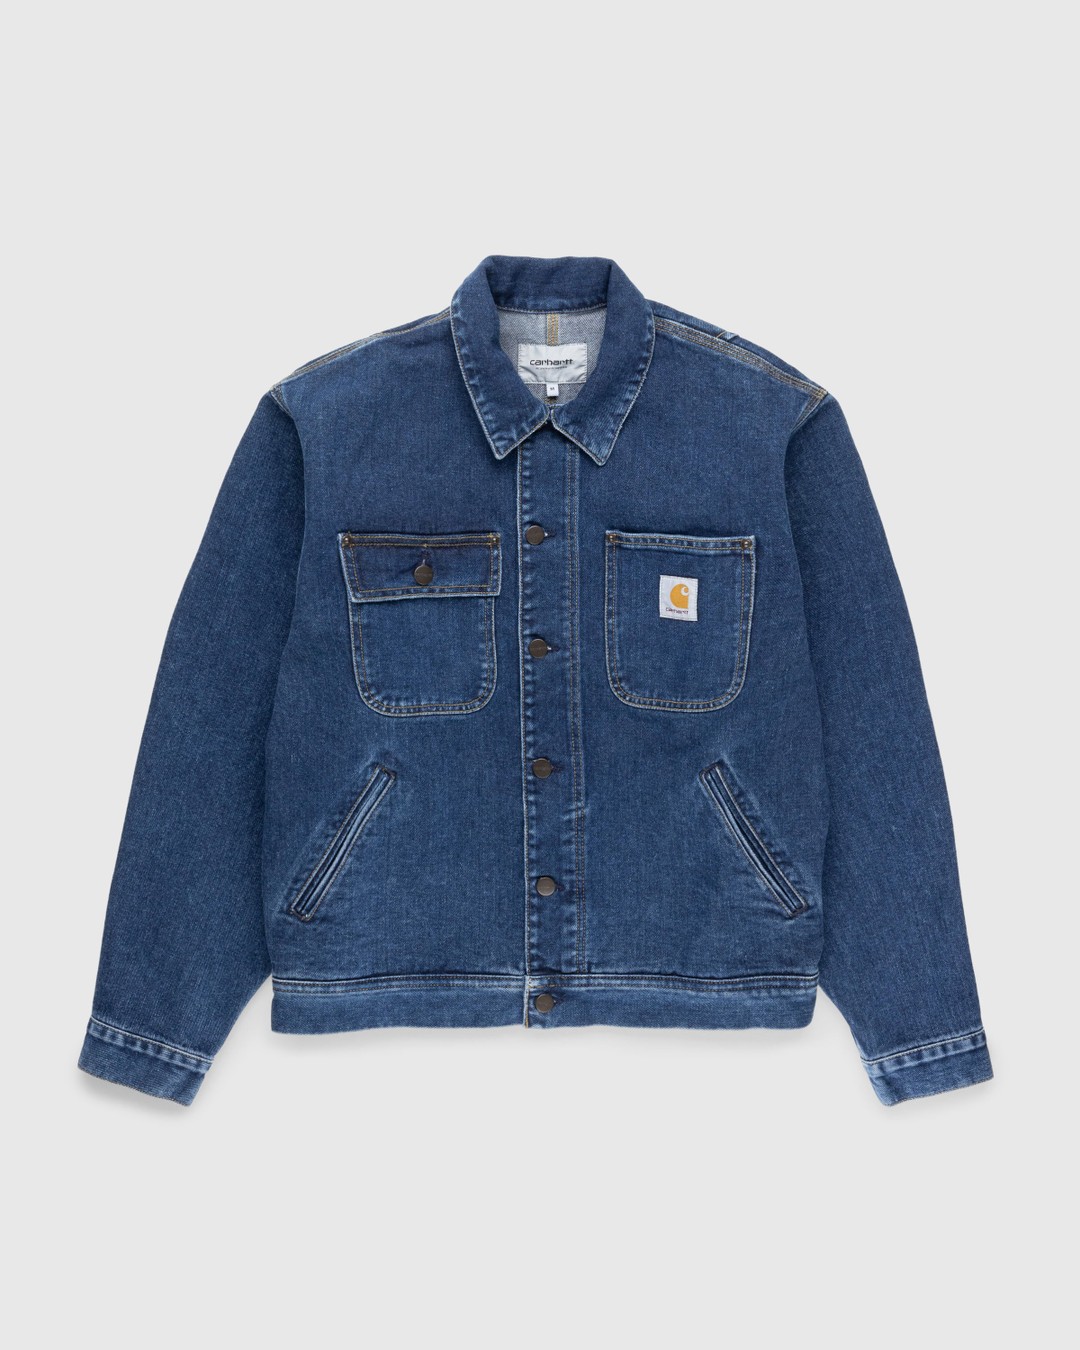 Carhartt WIP – Saledo Jacket Stonewashed Blue - Outerwear - Blue - Image 1